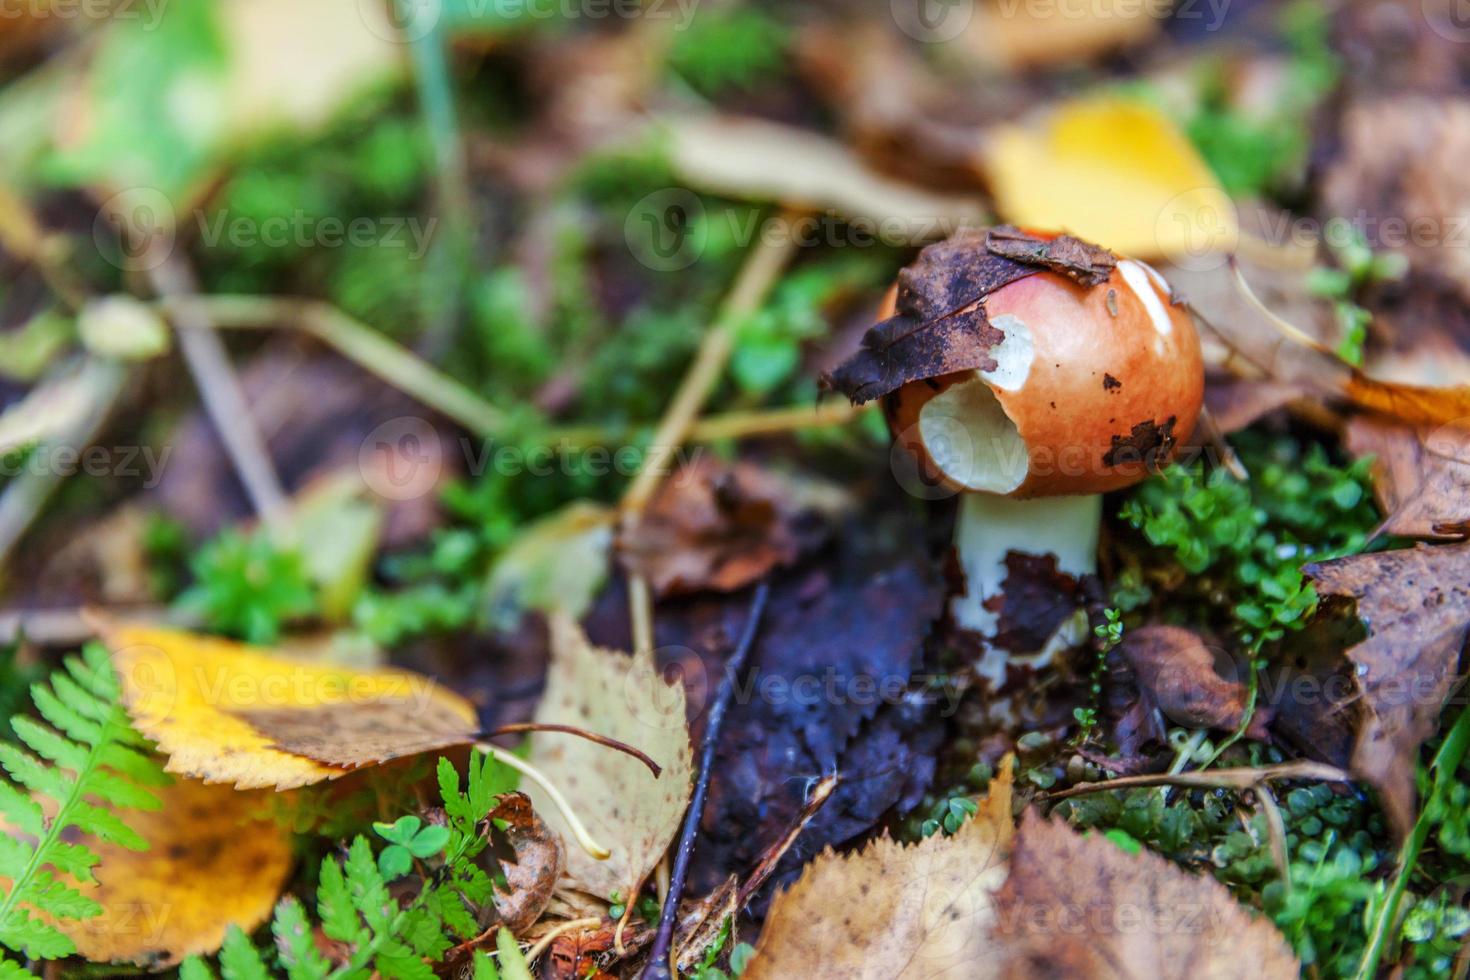 russula de cogumelo pequeno comestível com tampa ruiva vermelha em fundo de floresta de outono de musgo. fungos no ambiente natural. macro de cogumelo grande close-up. inspiradora paisagem natural de verão ou outono. foto